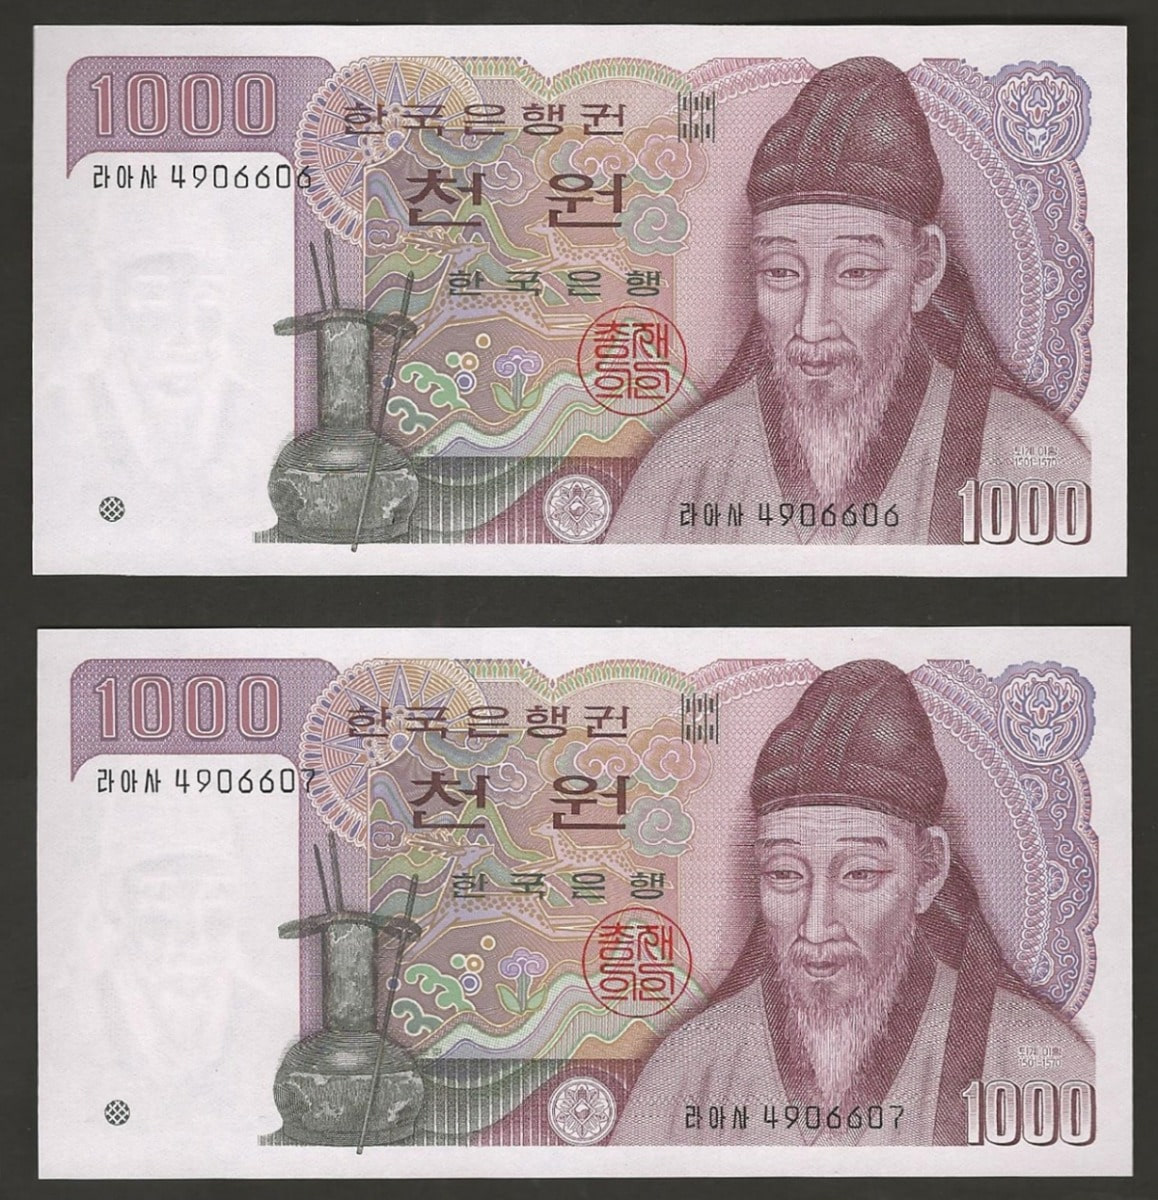 한국은행 나 1000원 2차 천원권 양성기호 2연번 (연속번호 2매) 미사용